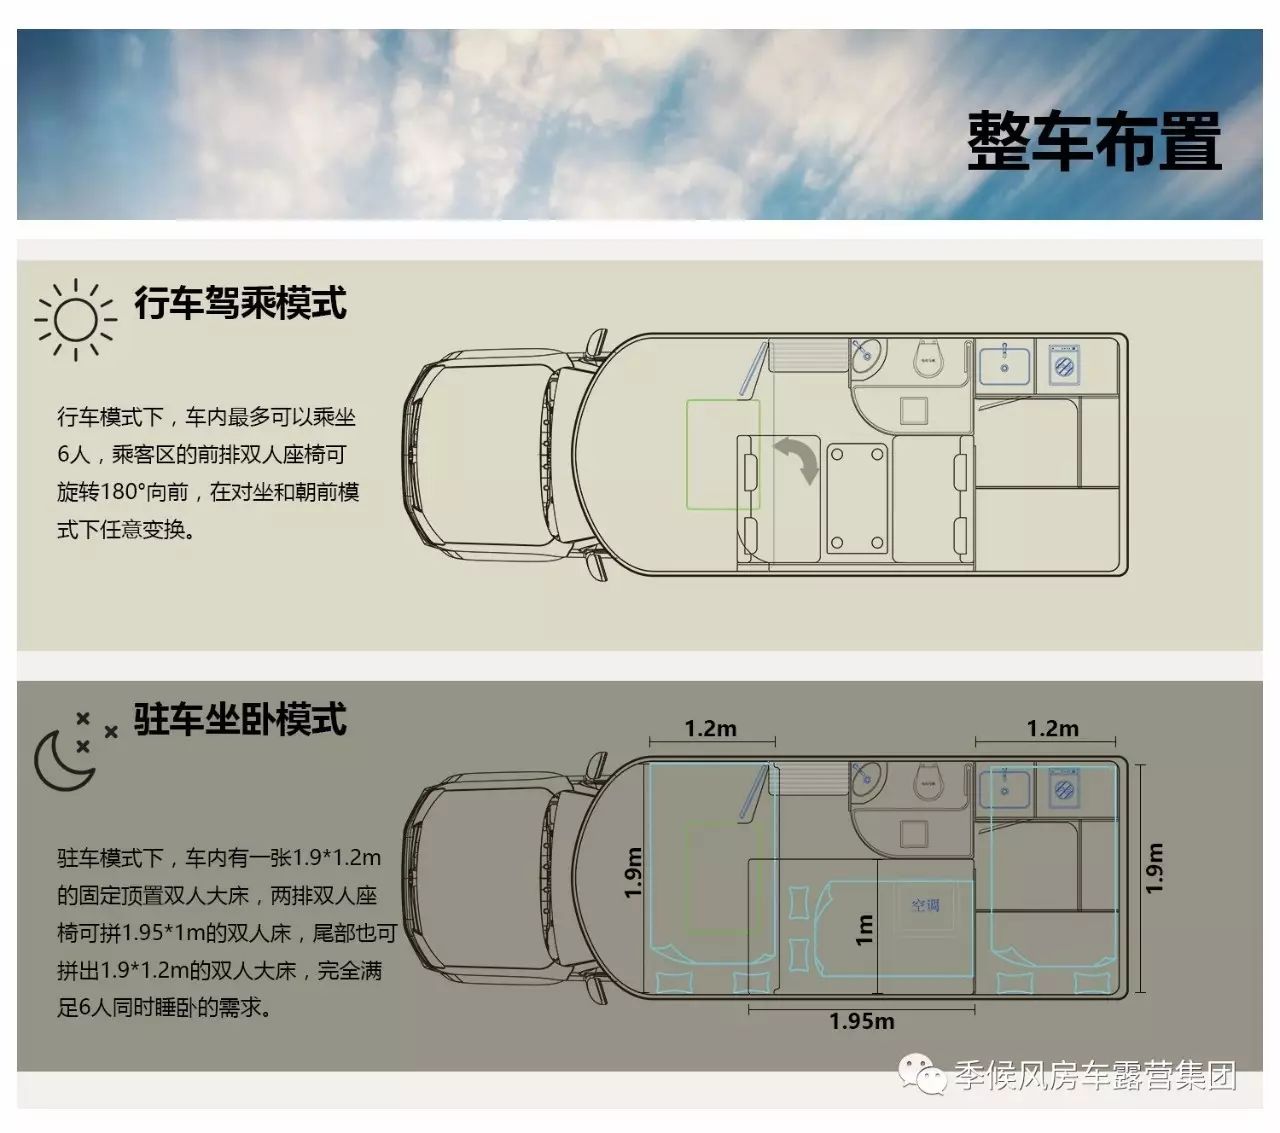 【新车资讯】江铃旅居车新作,首款单排皮卡式房车骐铃t7超大空间